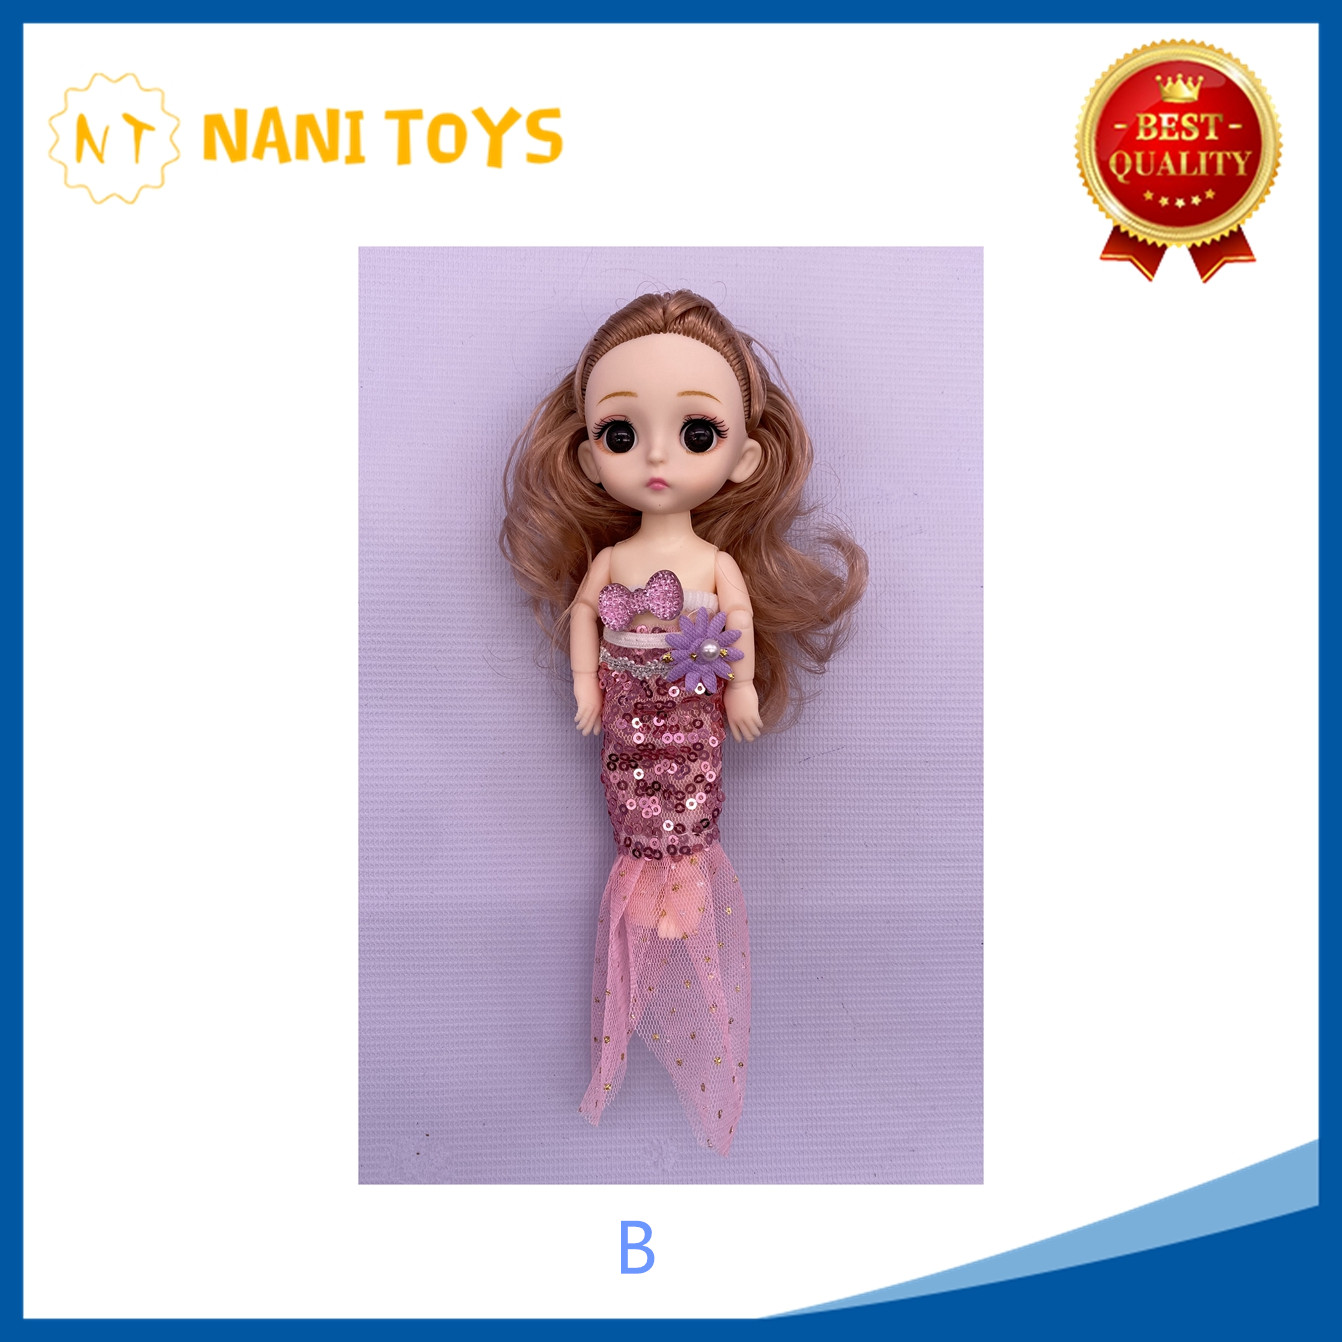 NANIToys ขายถูกที่สุด ตุ๊กตาบาร์บี้ เจ้าหญิง WJ37